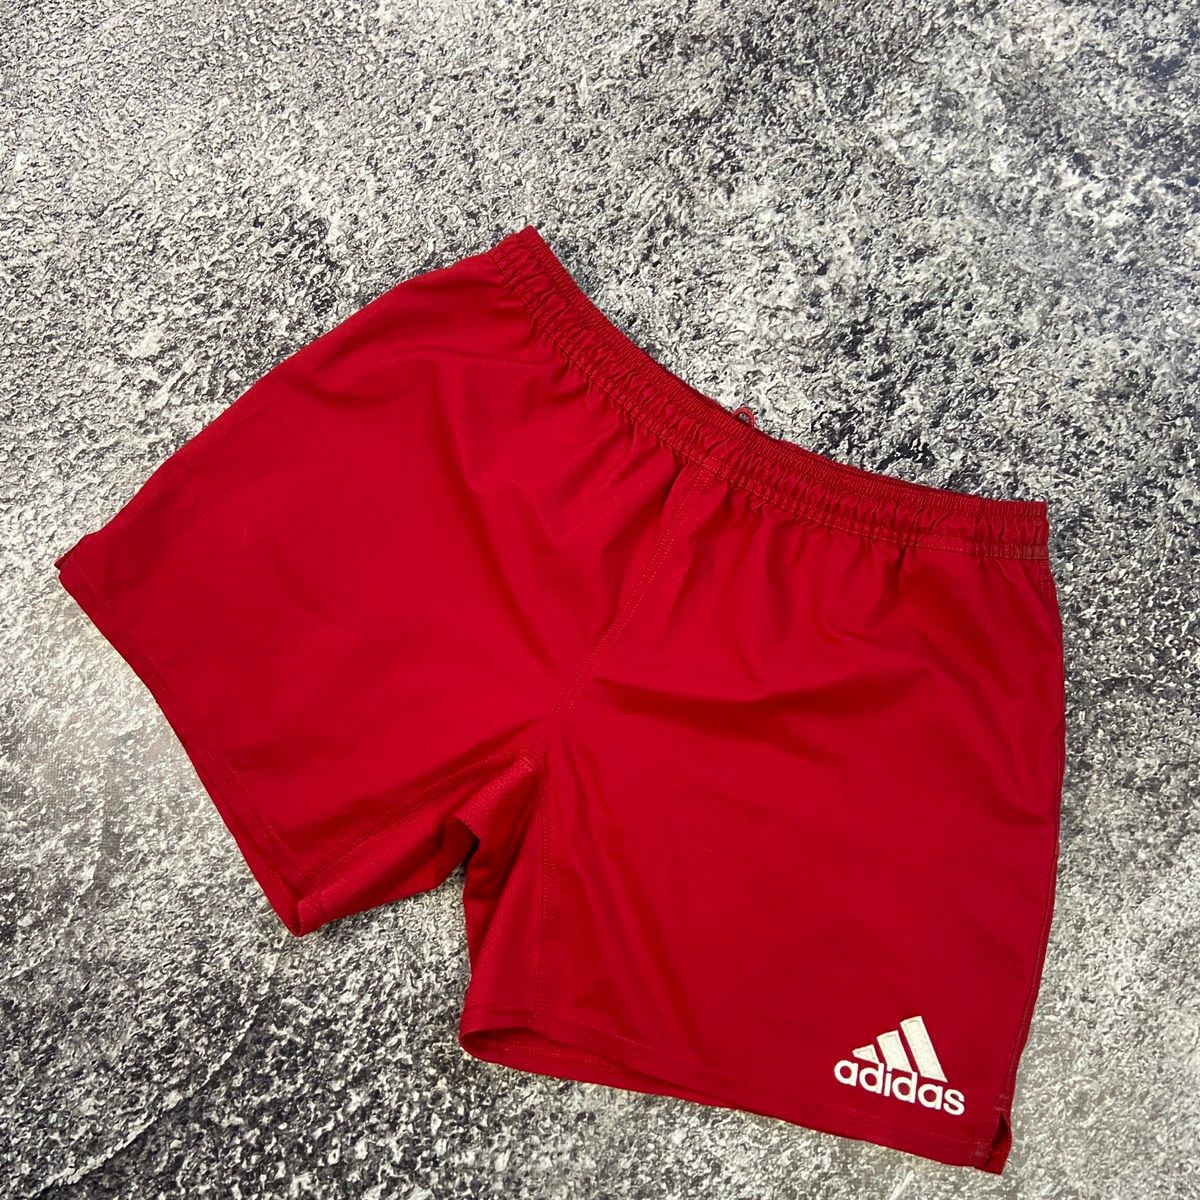 Adidas Man Shorts Adidas Vintage Red White Striped Mini Logo Y2k Size US 40 / EU 56 - 3 Thumbnail